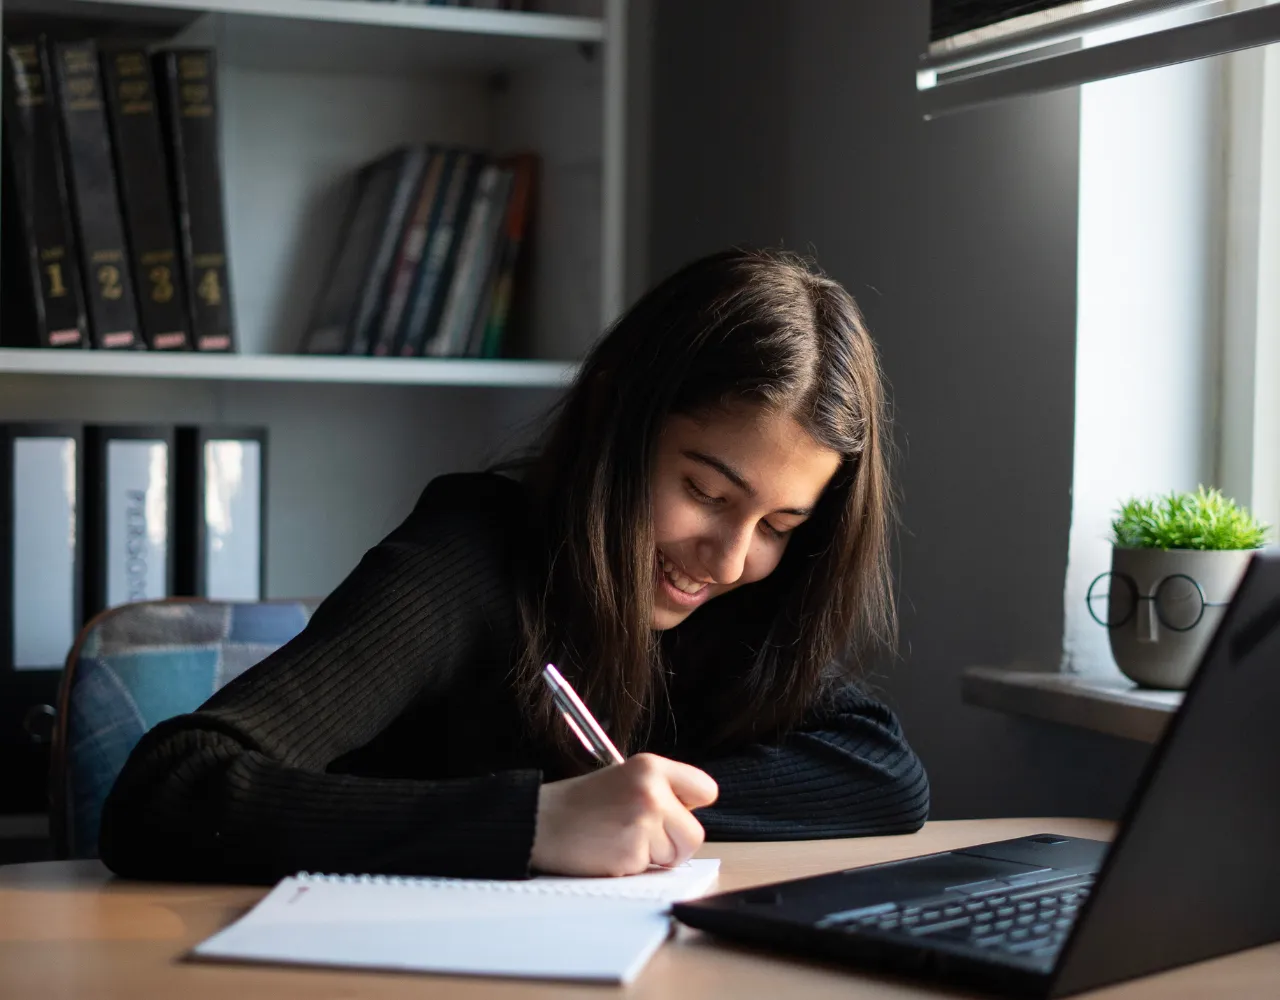 Uma jovem sorrindo enquanto escreve em um caderno em uma mesa, com um laptop aberto ao lado e livros ao fundo.